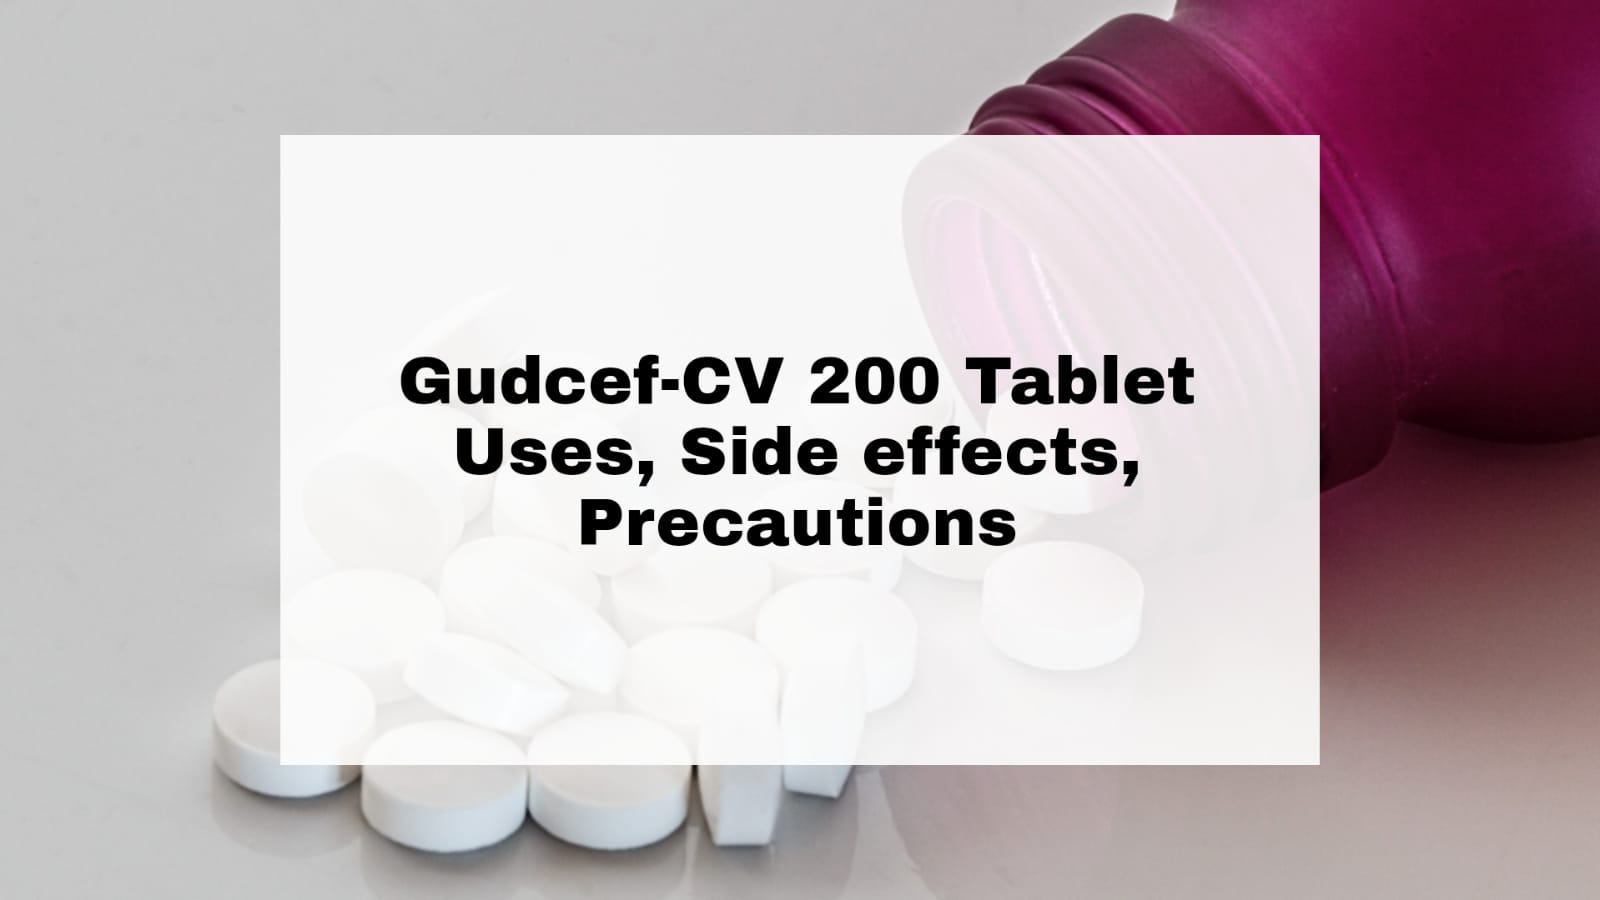 Gudcef-CV 200 Tablet